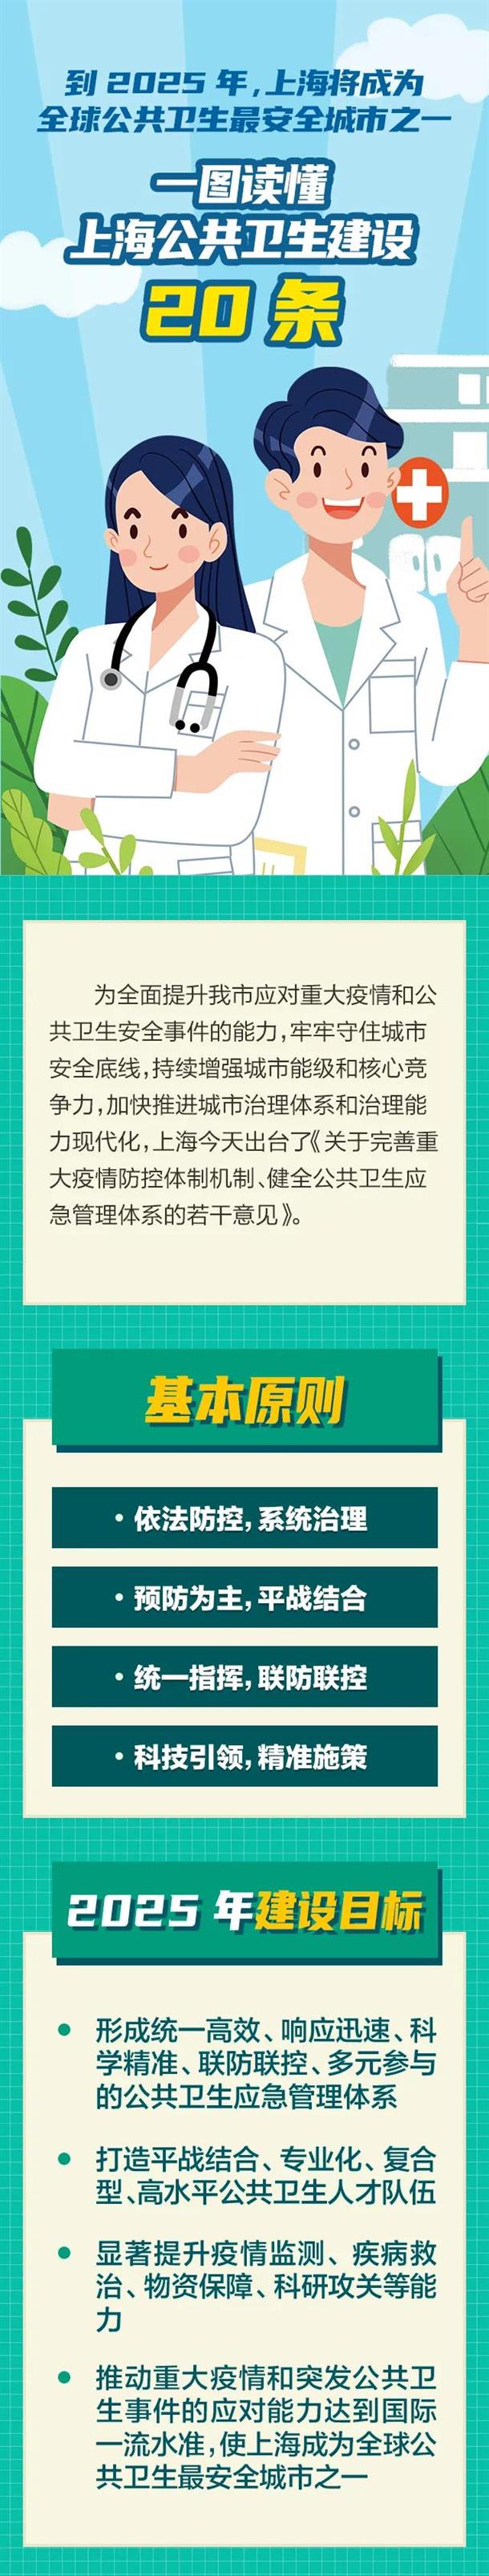 一图读懂上海公共卫生建设20条